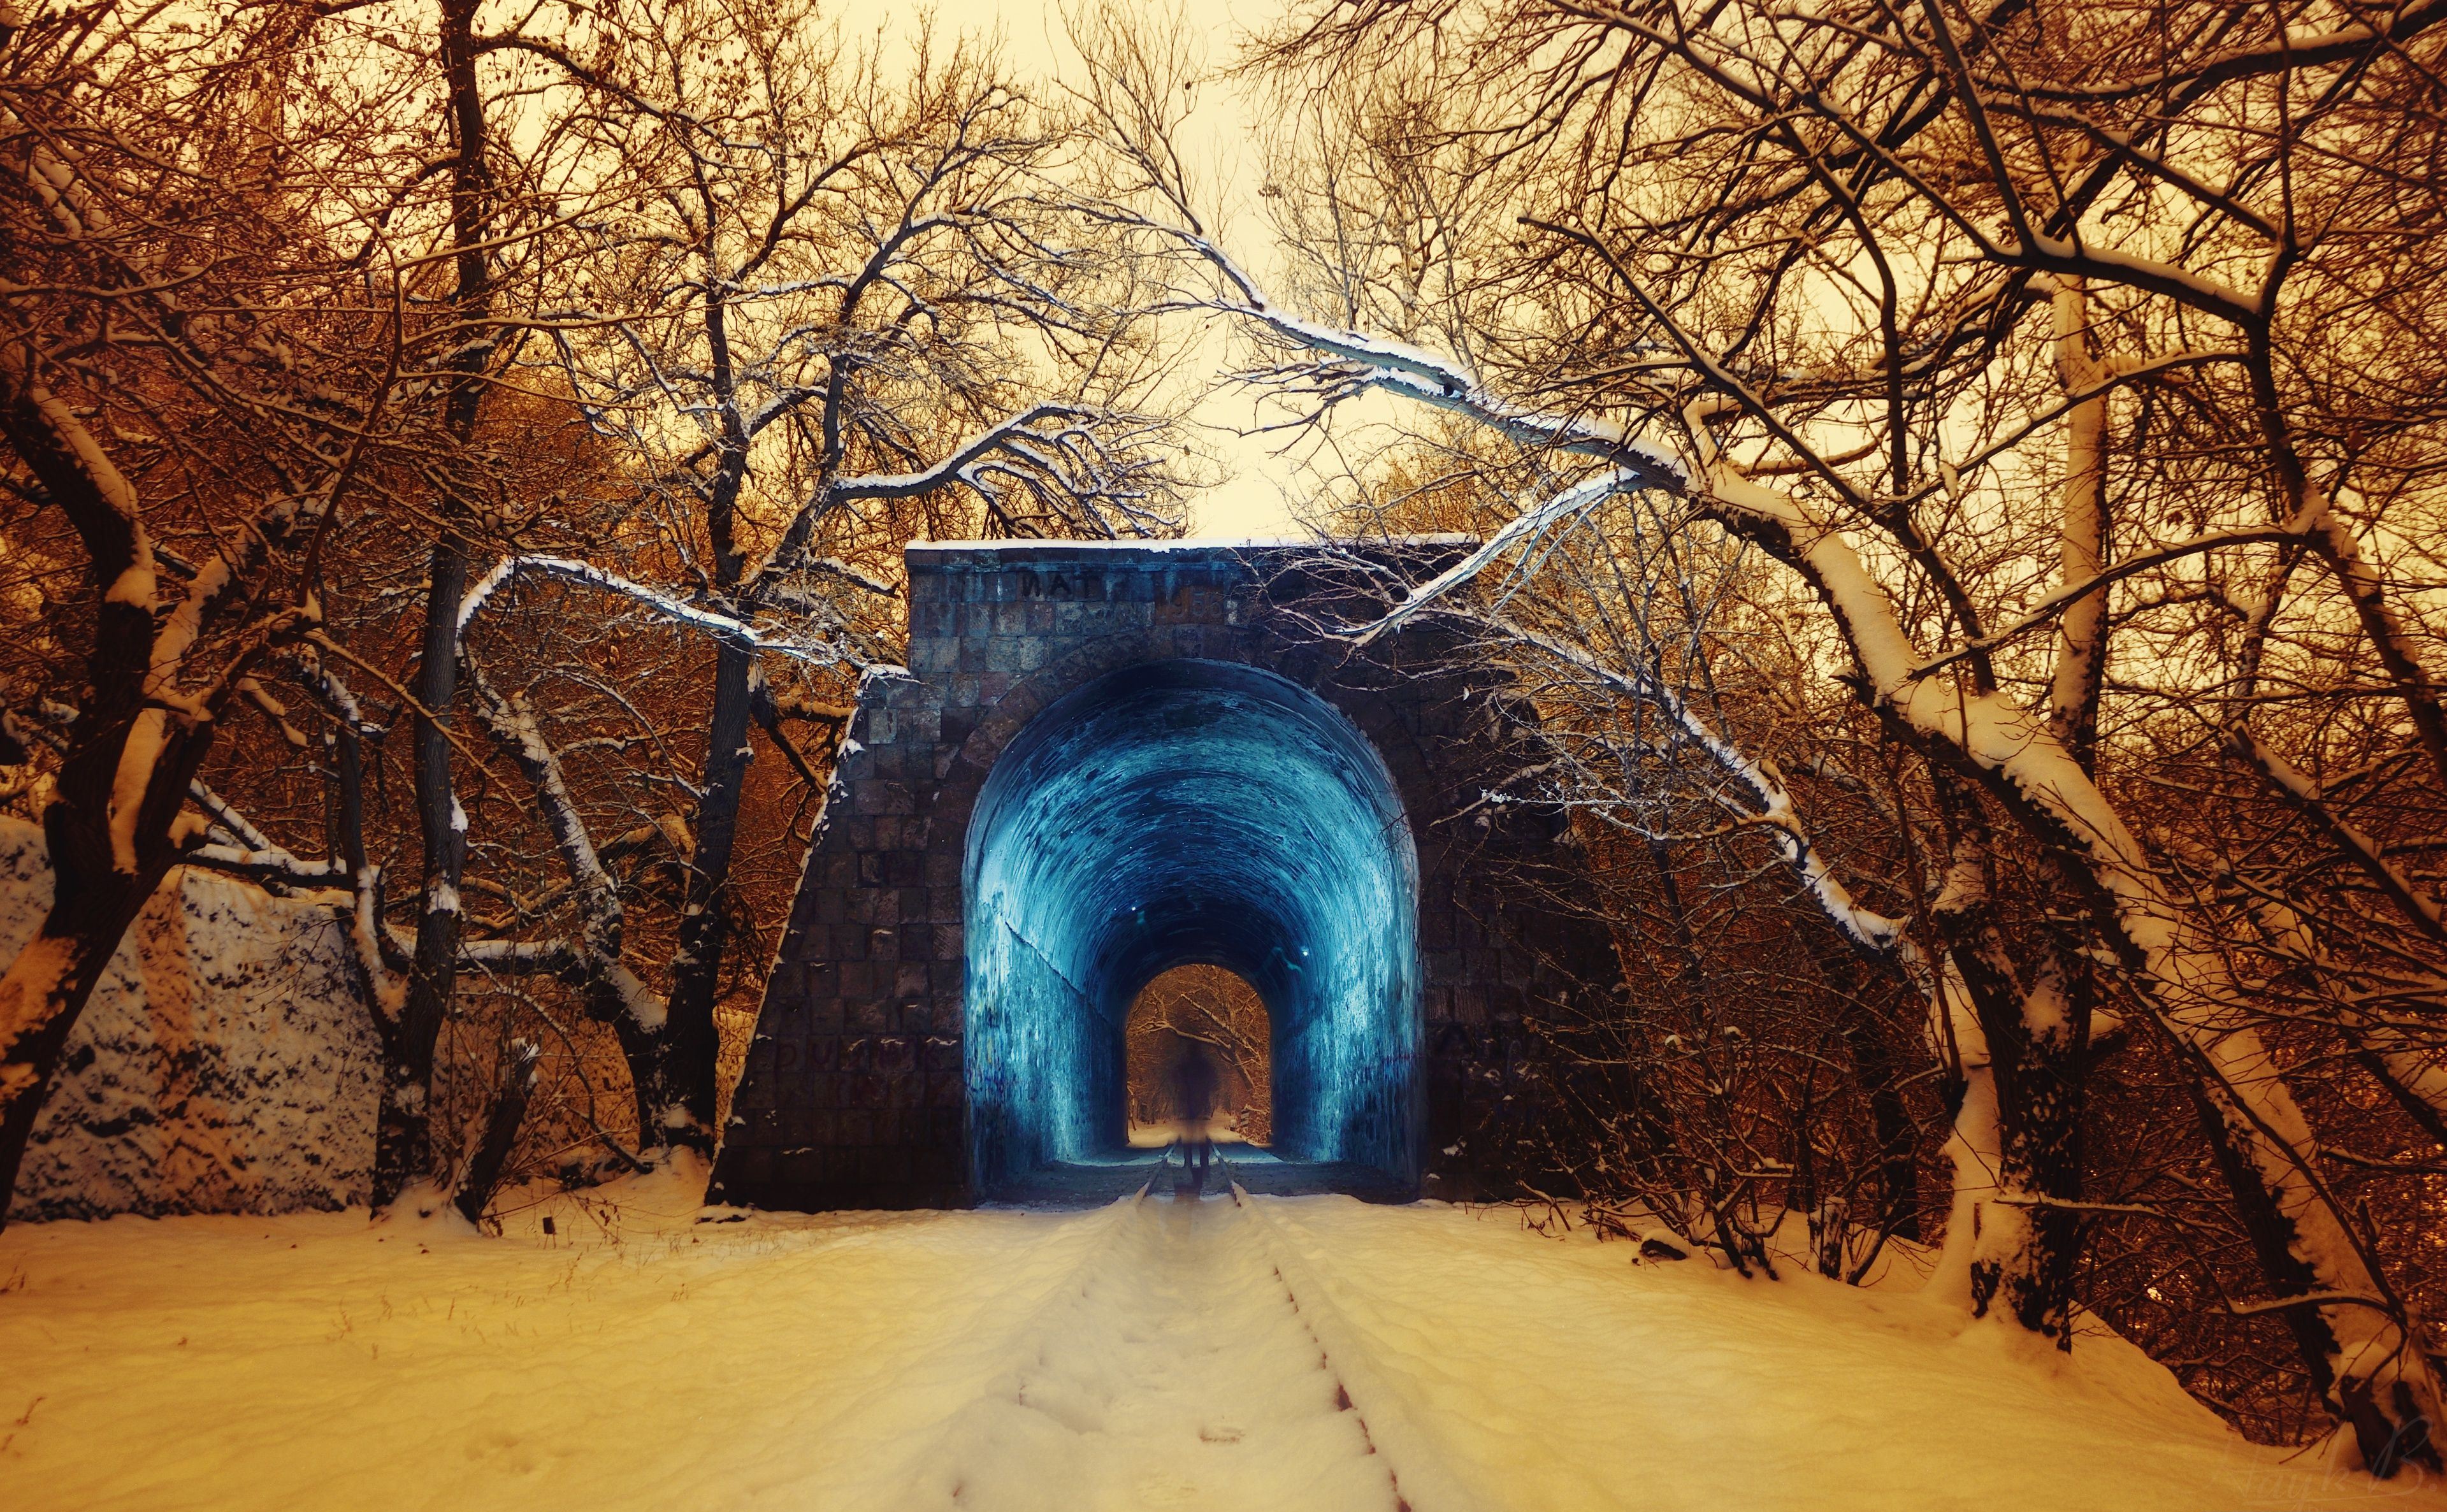 منظره شگفت انگیز تونل برفی آبی براق در جنگل زمستانی